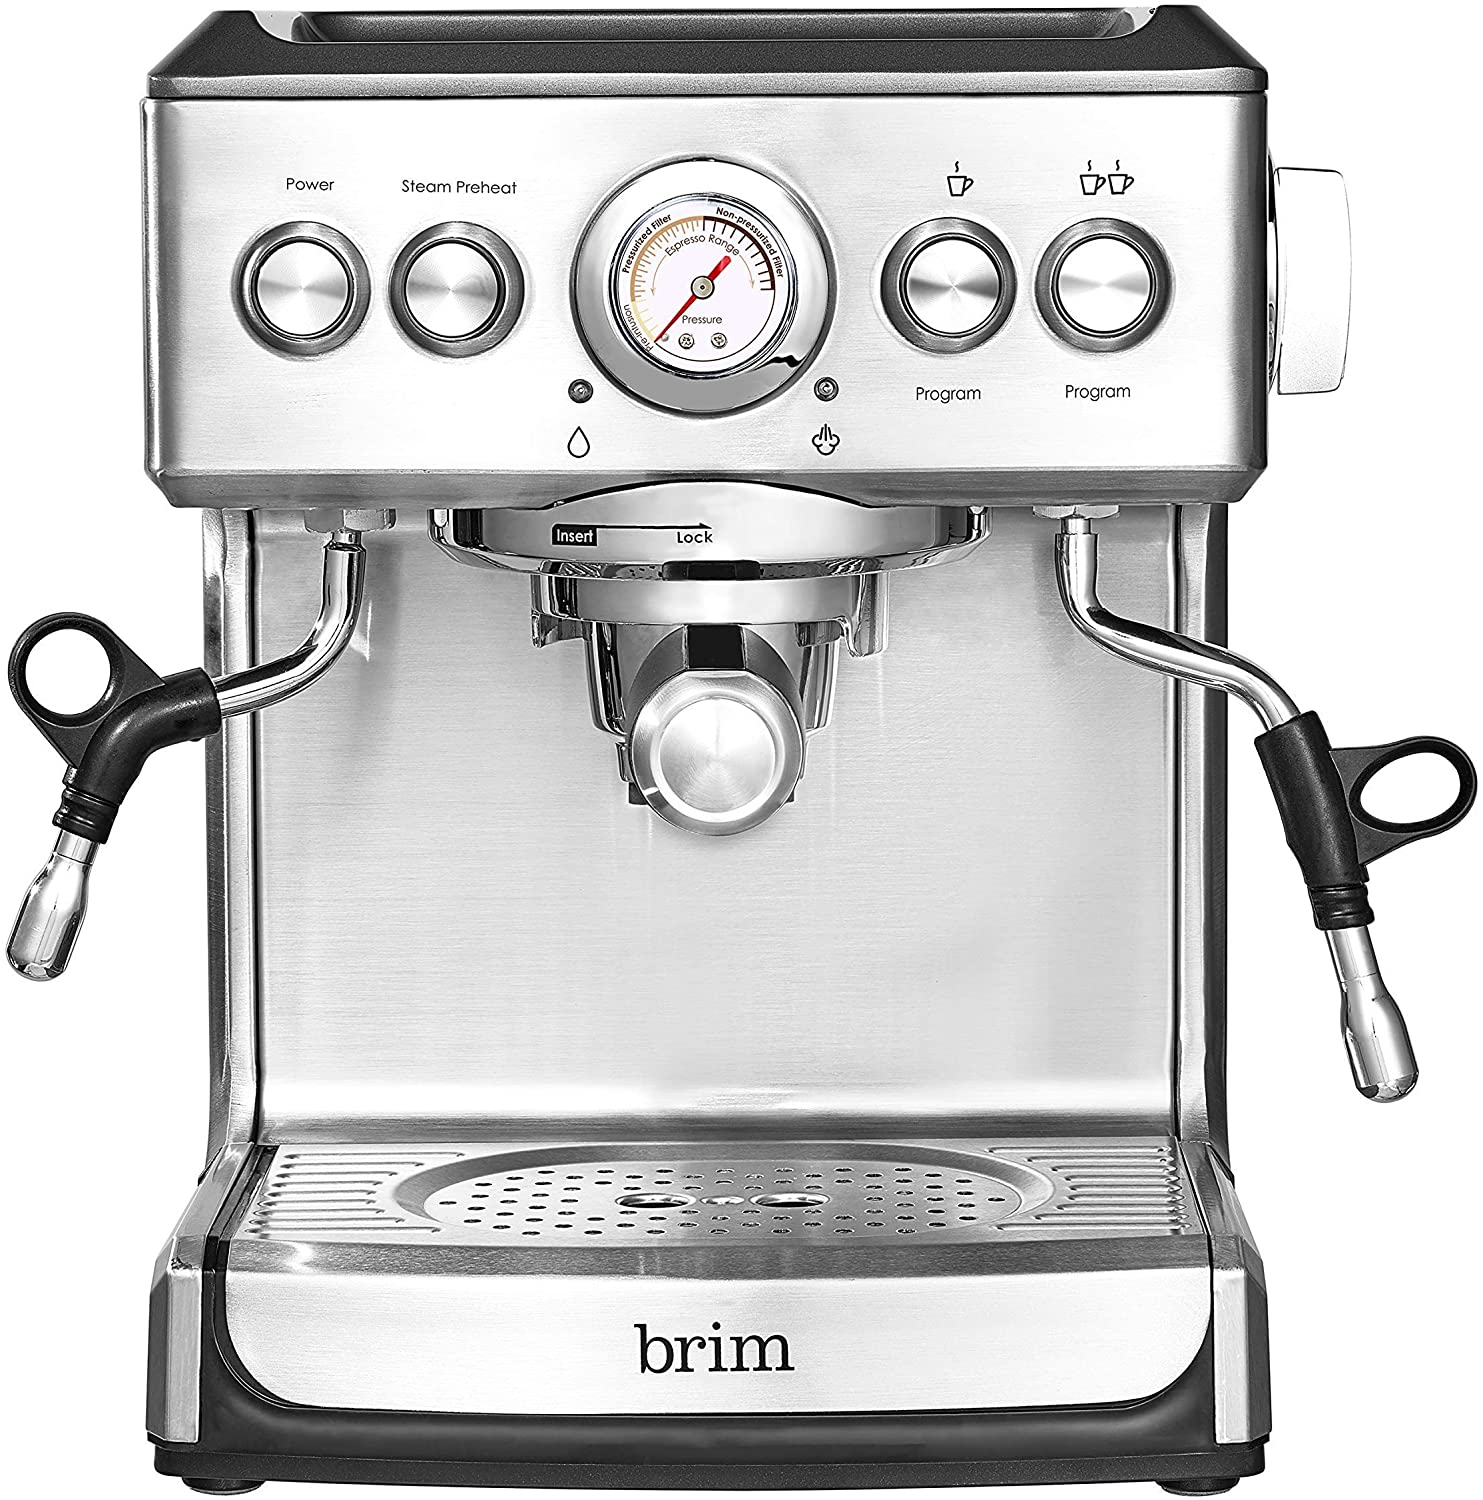 Brim 19 Bar Espresso Machine $200 + Free Shipping